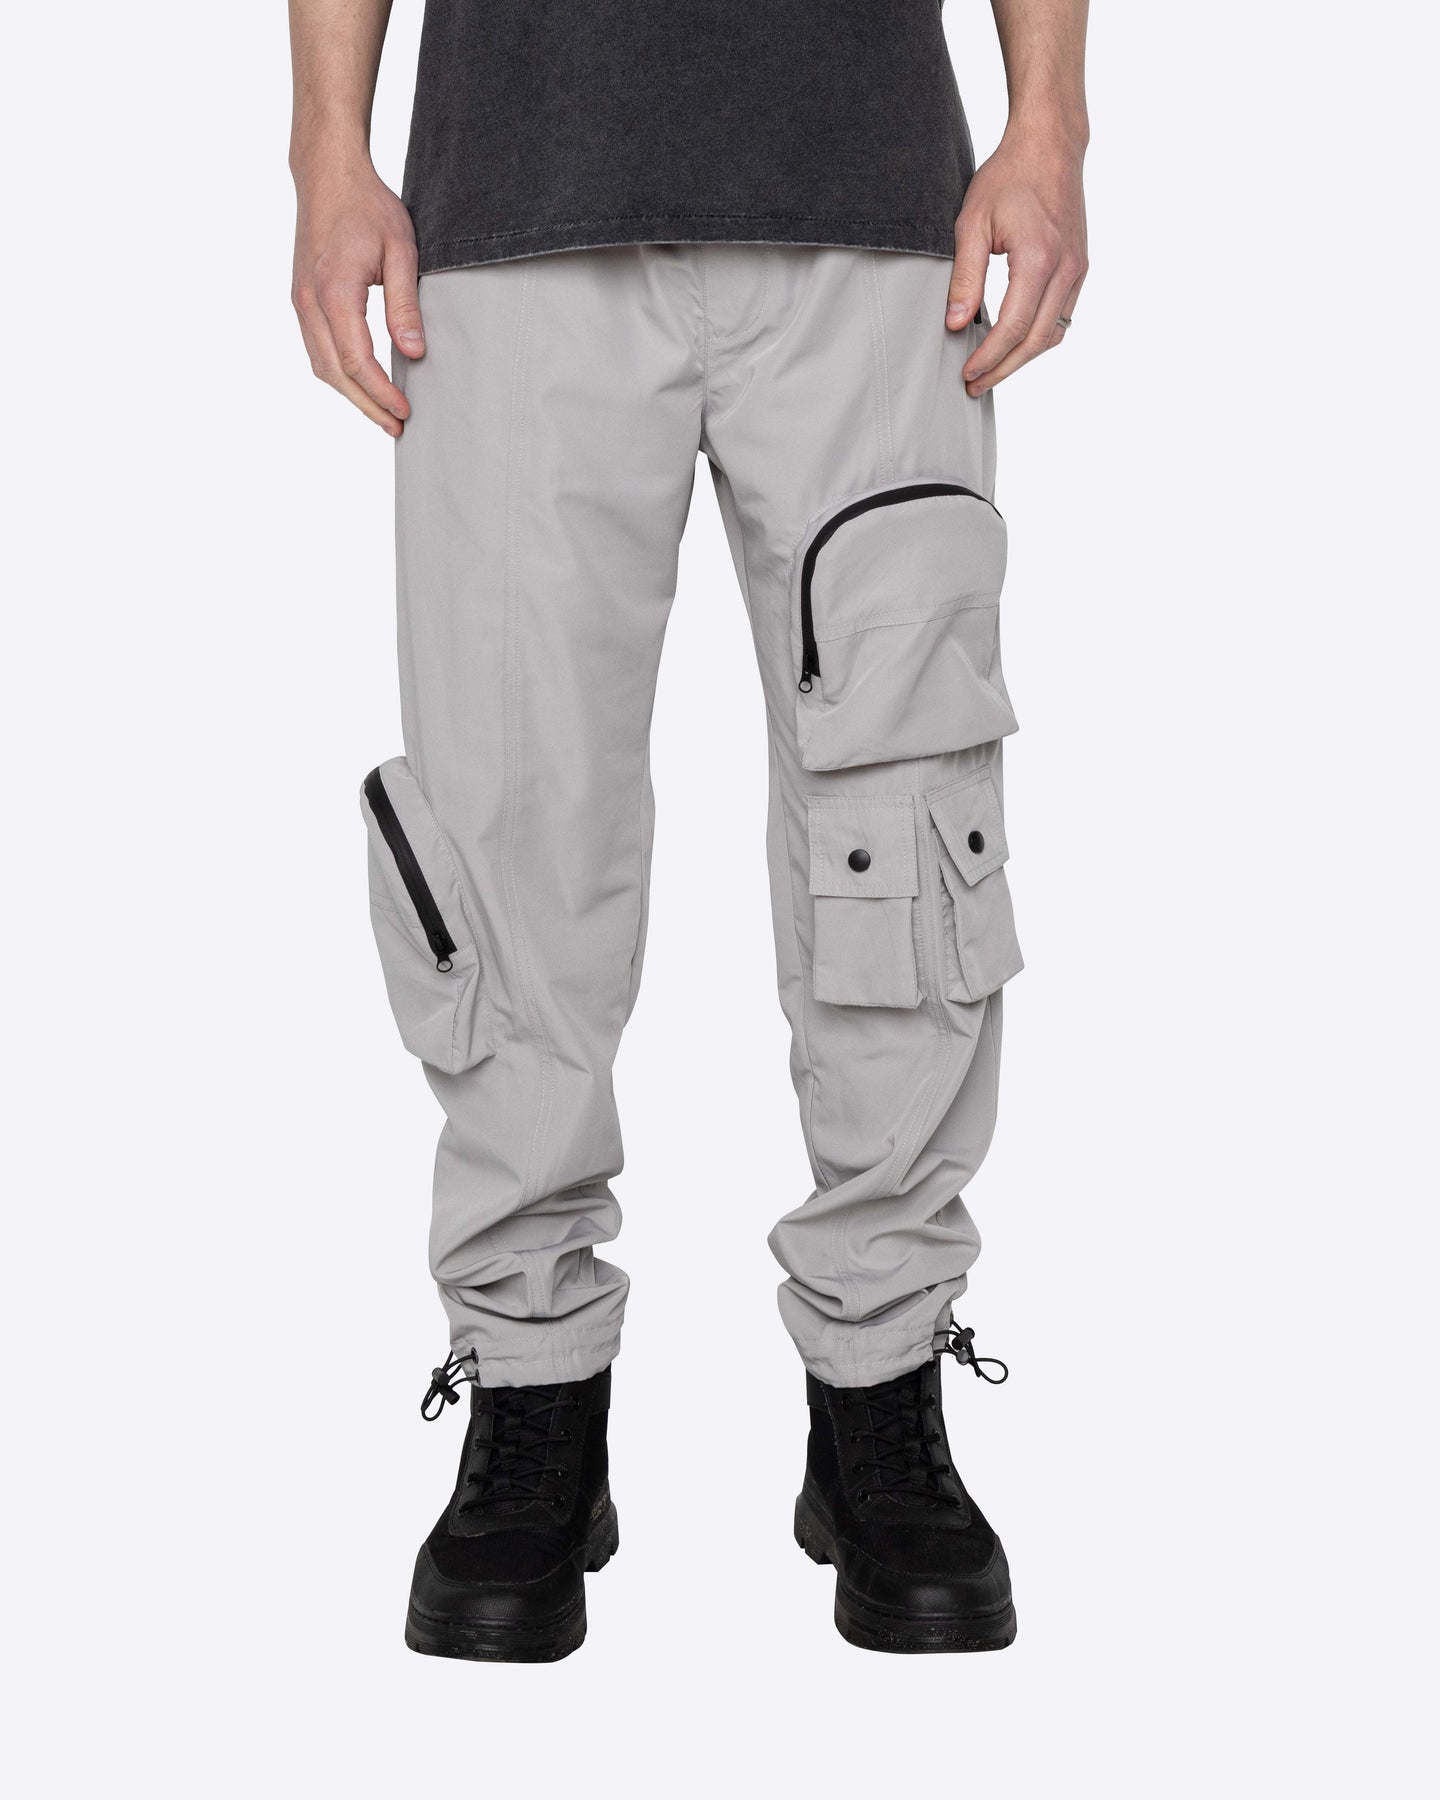 EPTM - Arena Cargo Pants -Grey - Clique Apparel